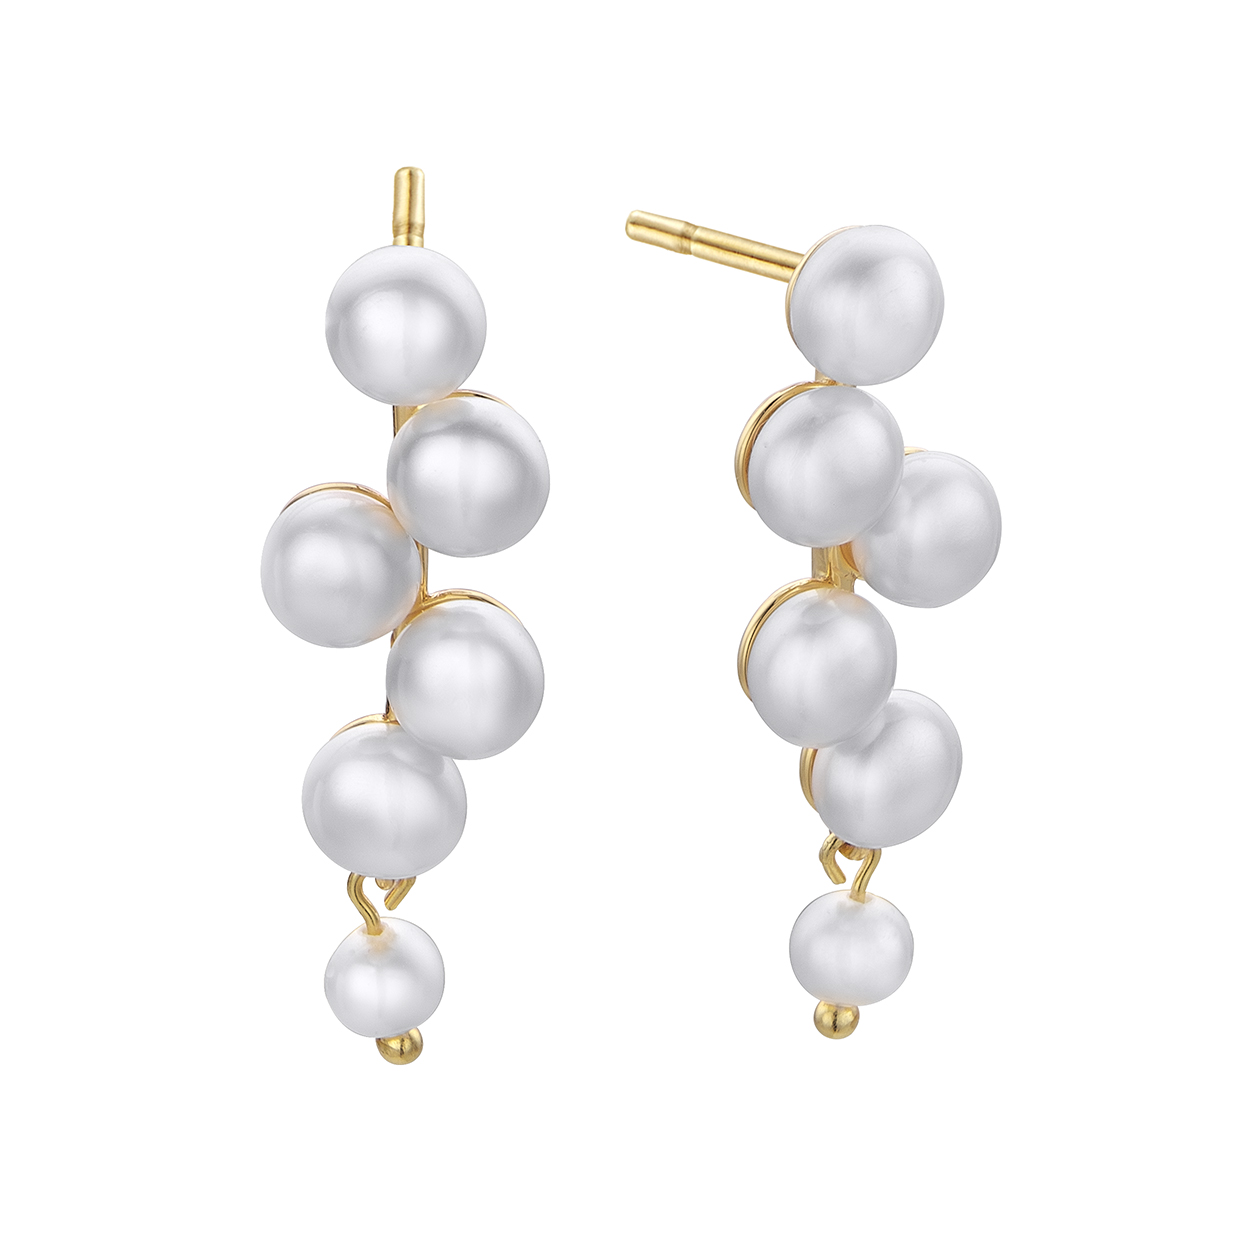 00511287-pendientes-perlas-plata-dorada-duran-exquse-joyeria-acebo